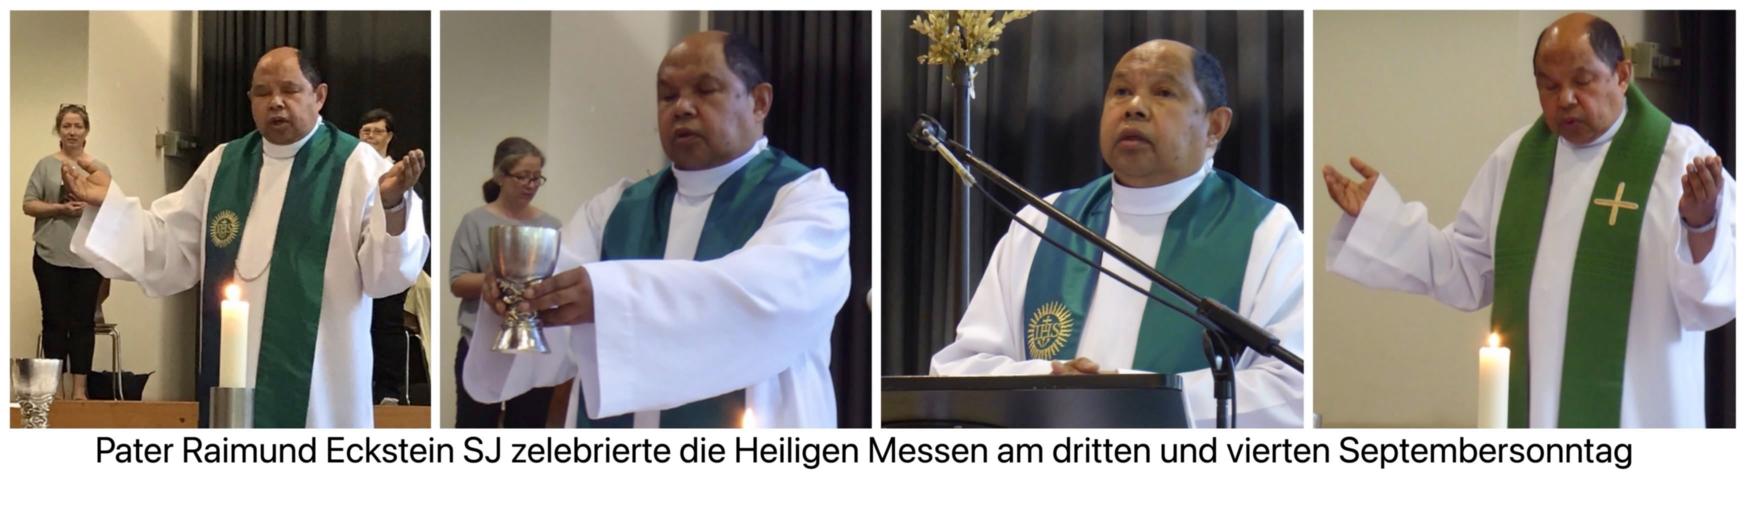 Pater Raimund Eckstein SJ zelebriert die Heilige Messe (c) Brigitta Gebauer 2021